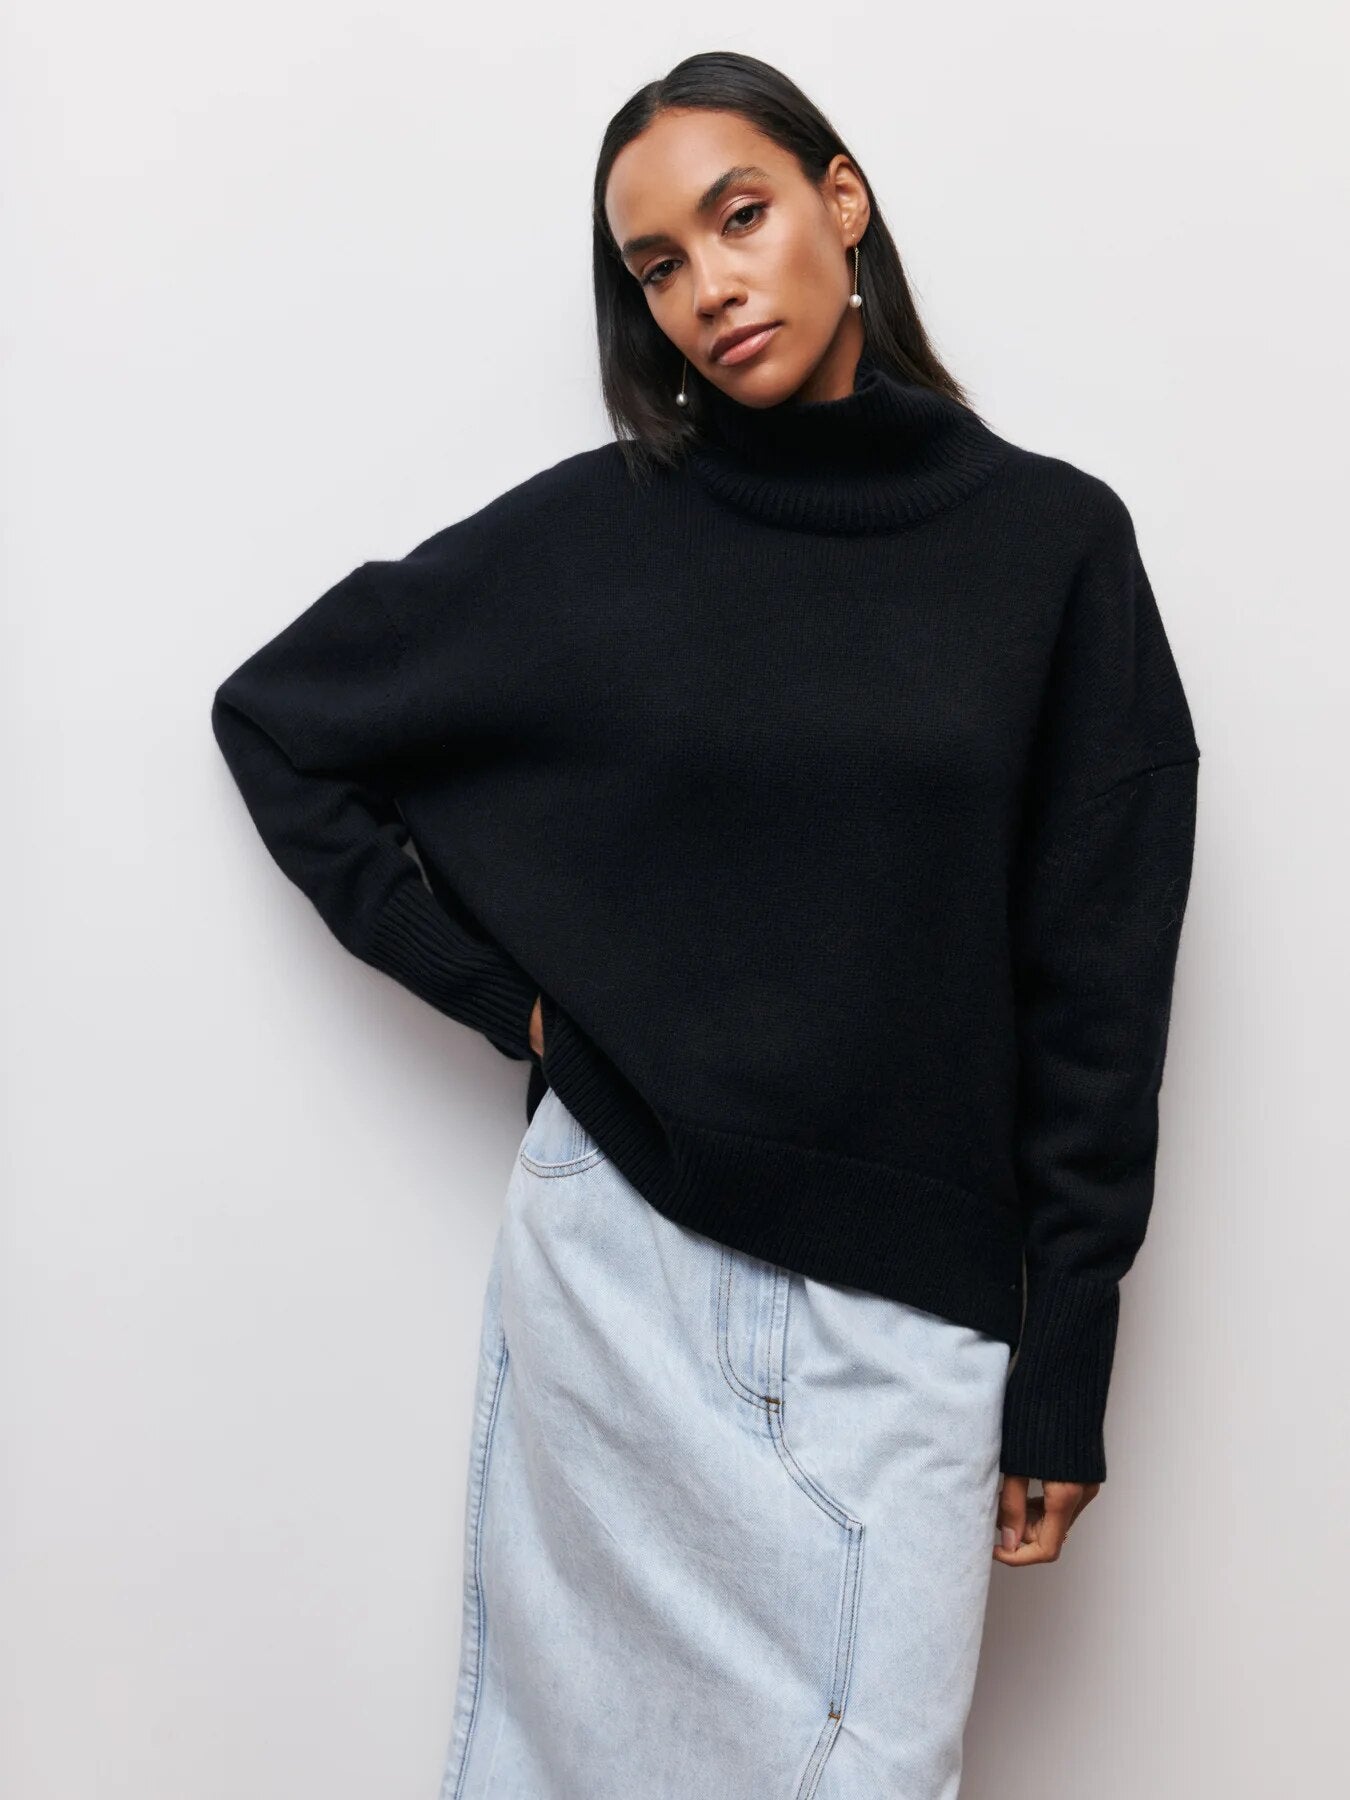 Fiaska - Hoher Kragen Pullover für Frauen